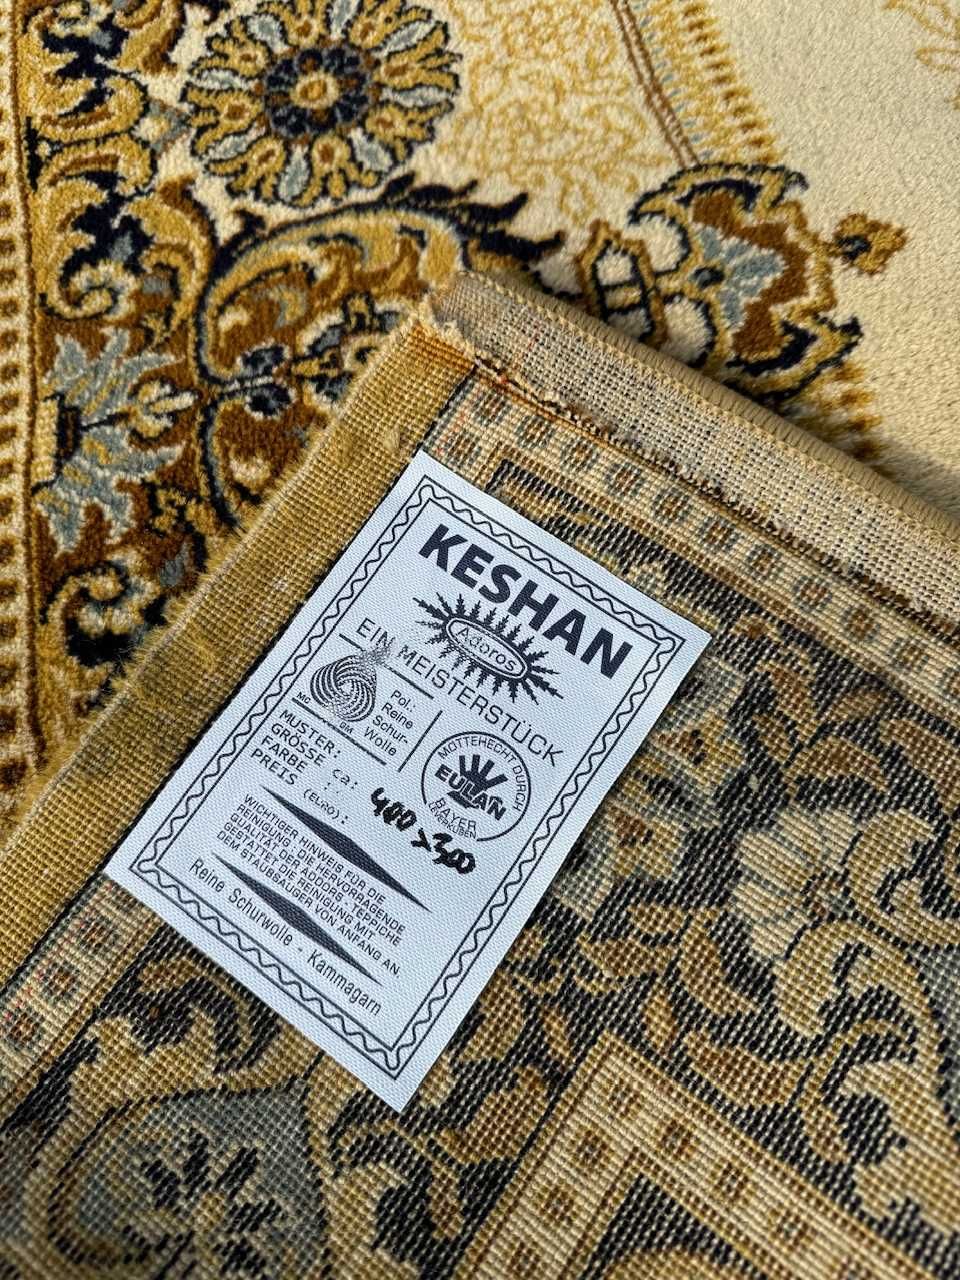 Olbrzymi wełniany dywan perski Keshan od Adoros 400x300 galeria 11 tys